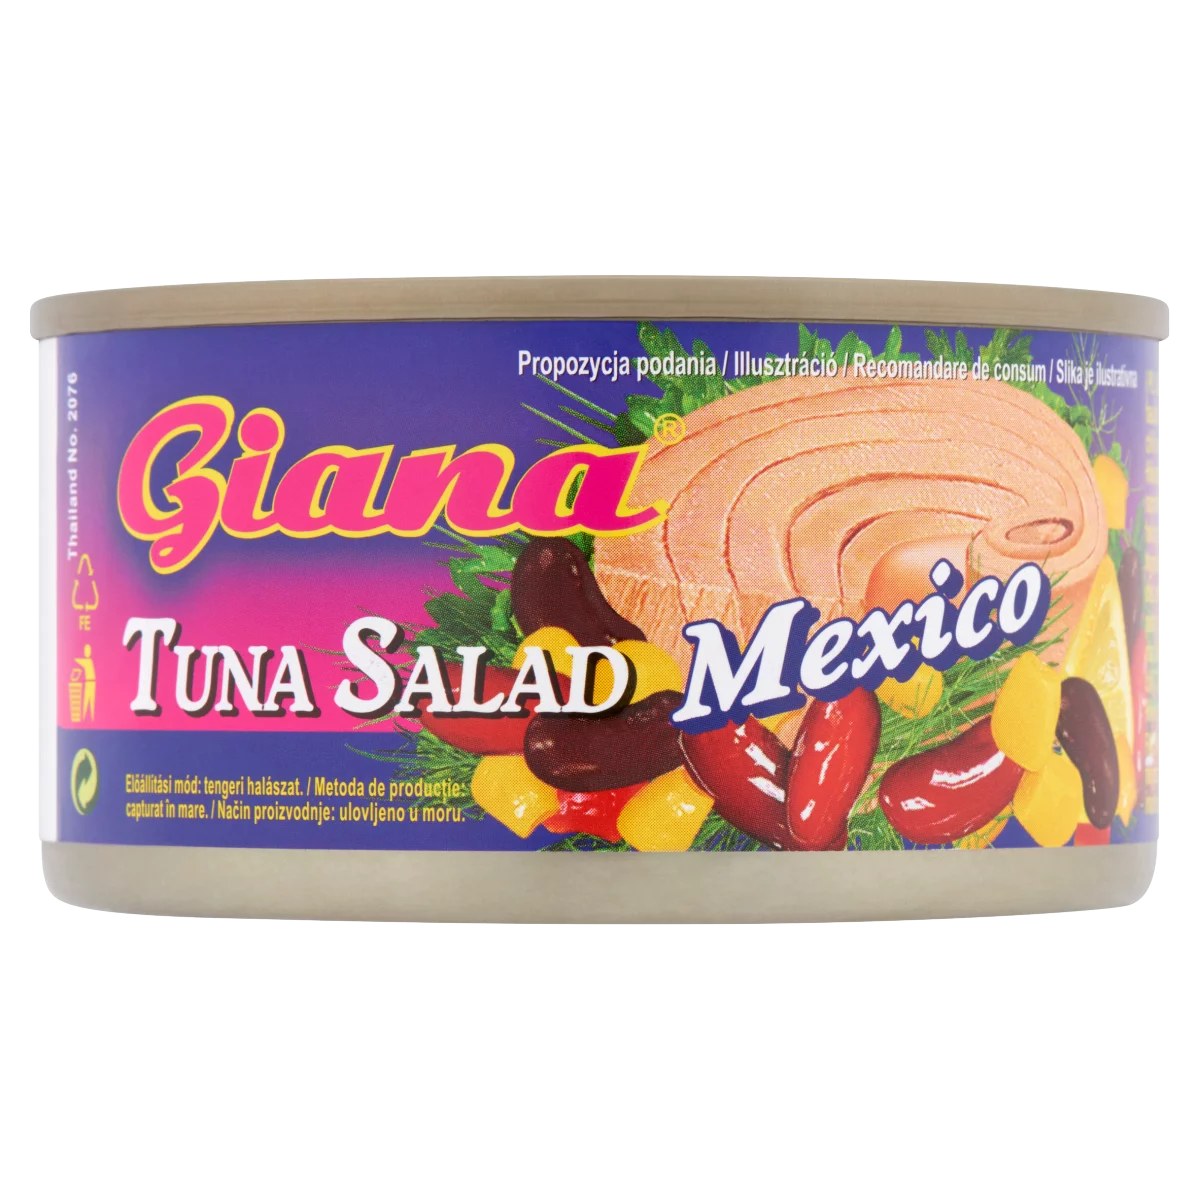 Giana Mexico csípős tonhalsaláta 185 g